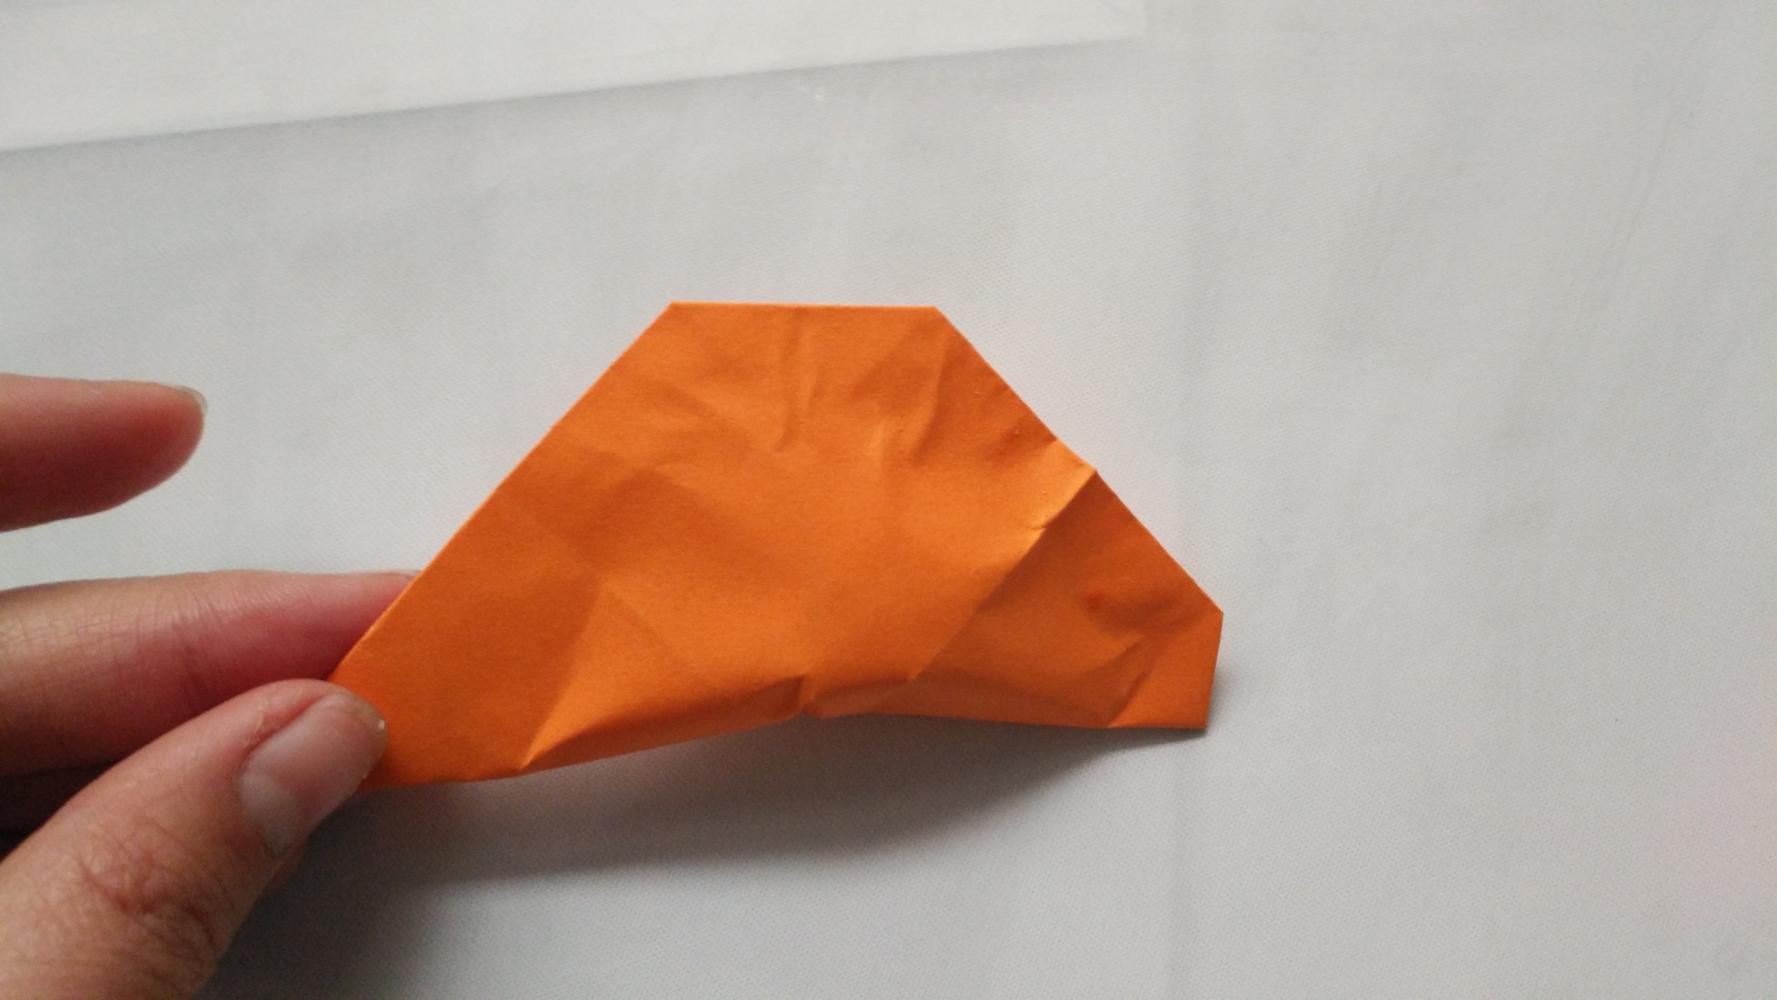 冬至, 一起来折纸彩色饺子吧, 做法很简单